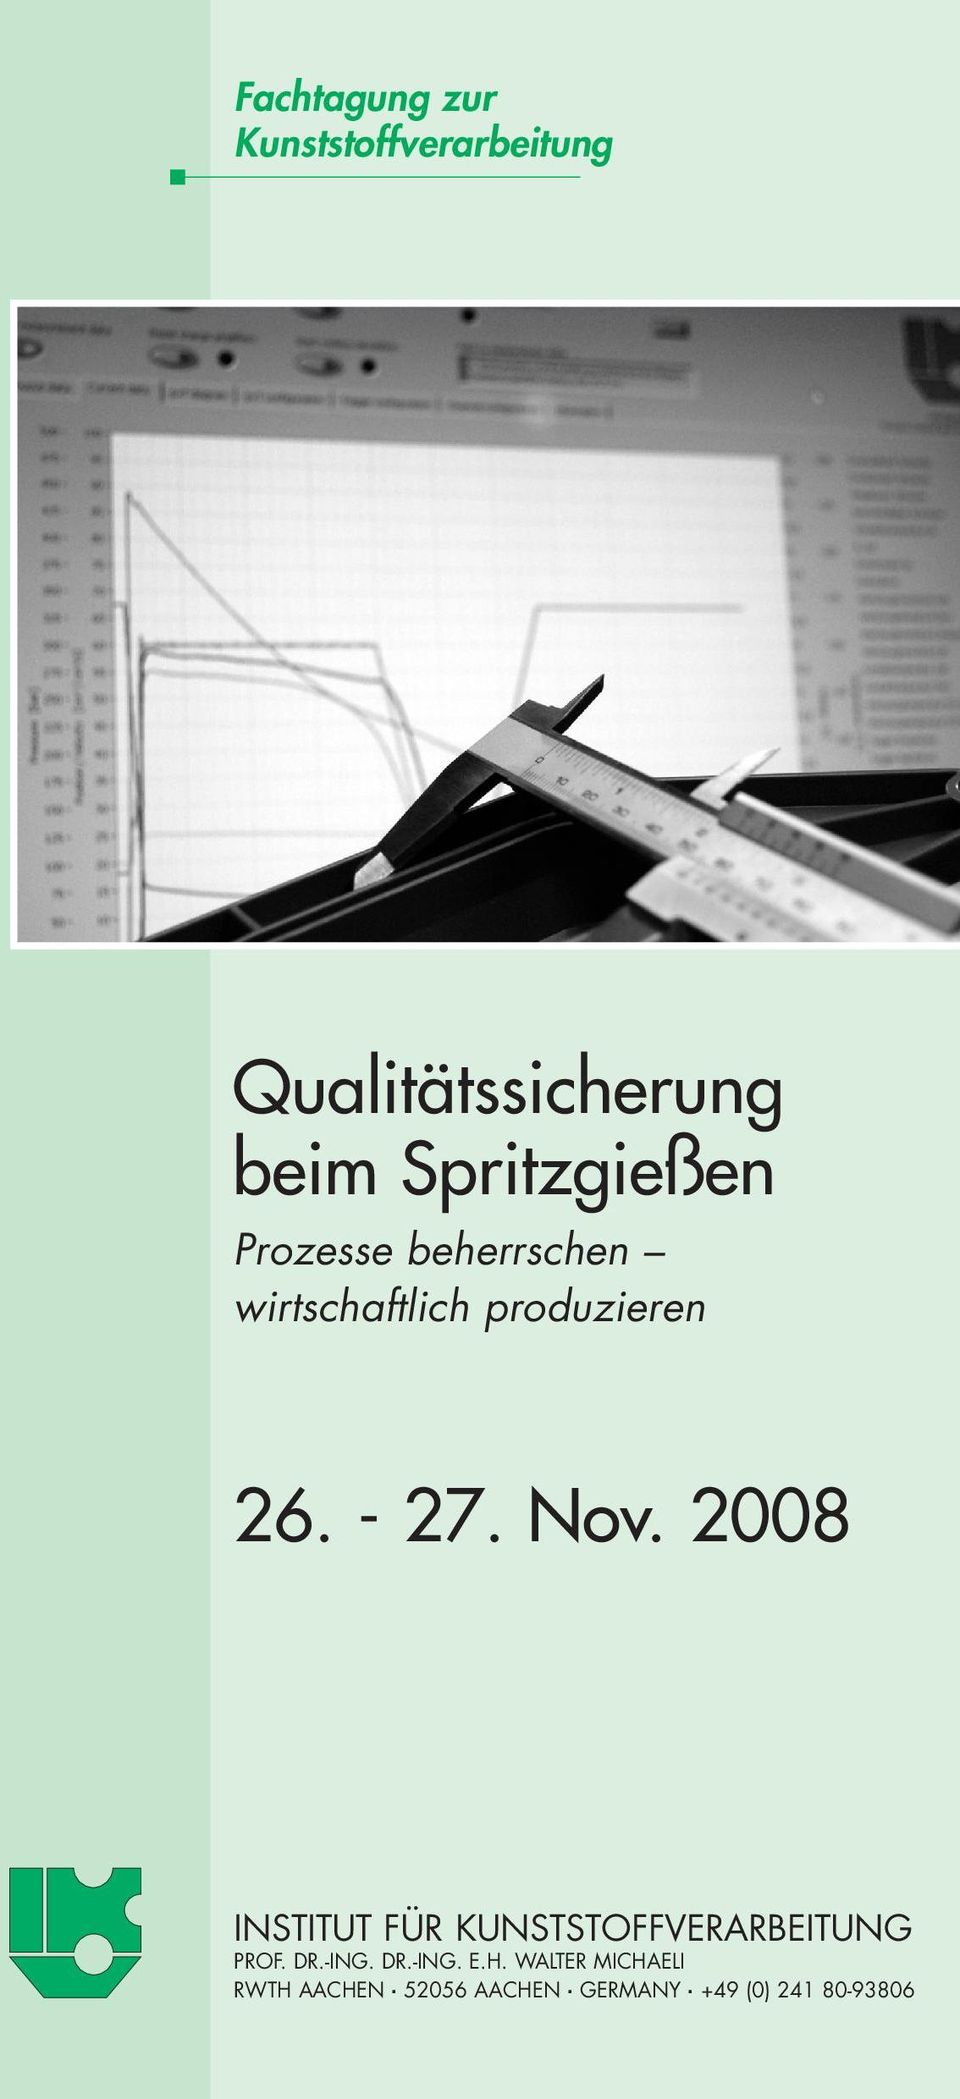 Nov. 2008 INSTITUT FÜR KUNSTSTOFFVERARBEITUNG PROF. DR.-ING. DR.-ING. E.